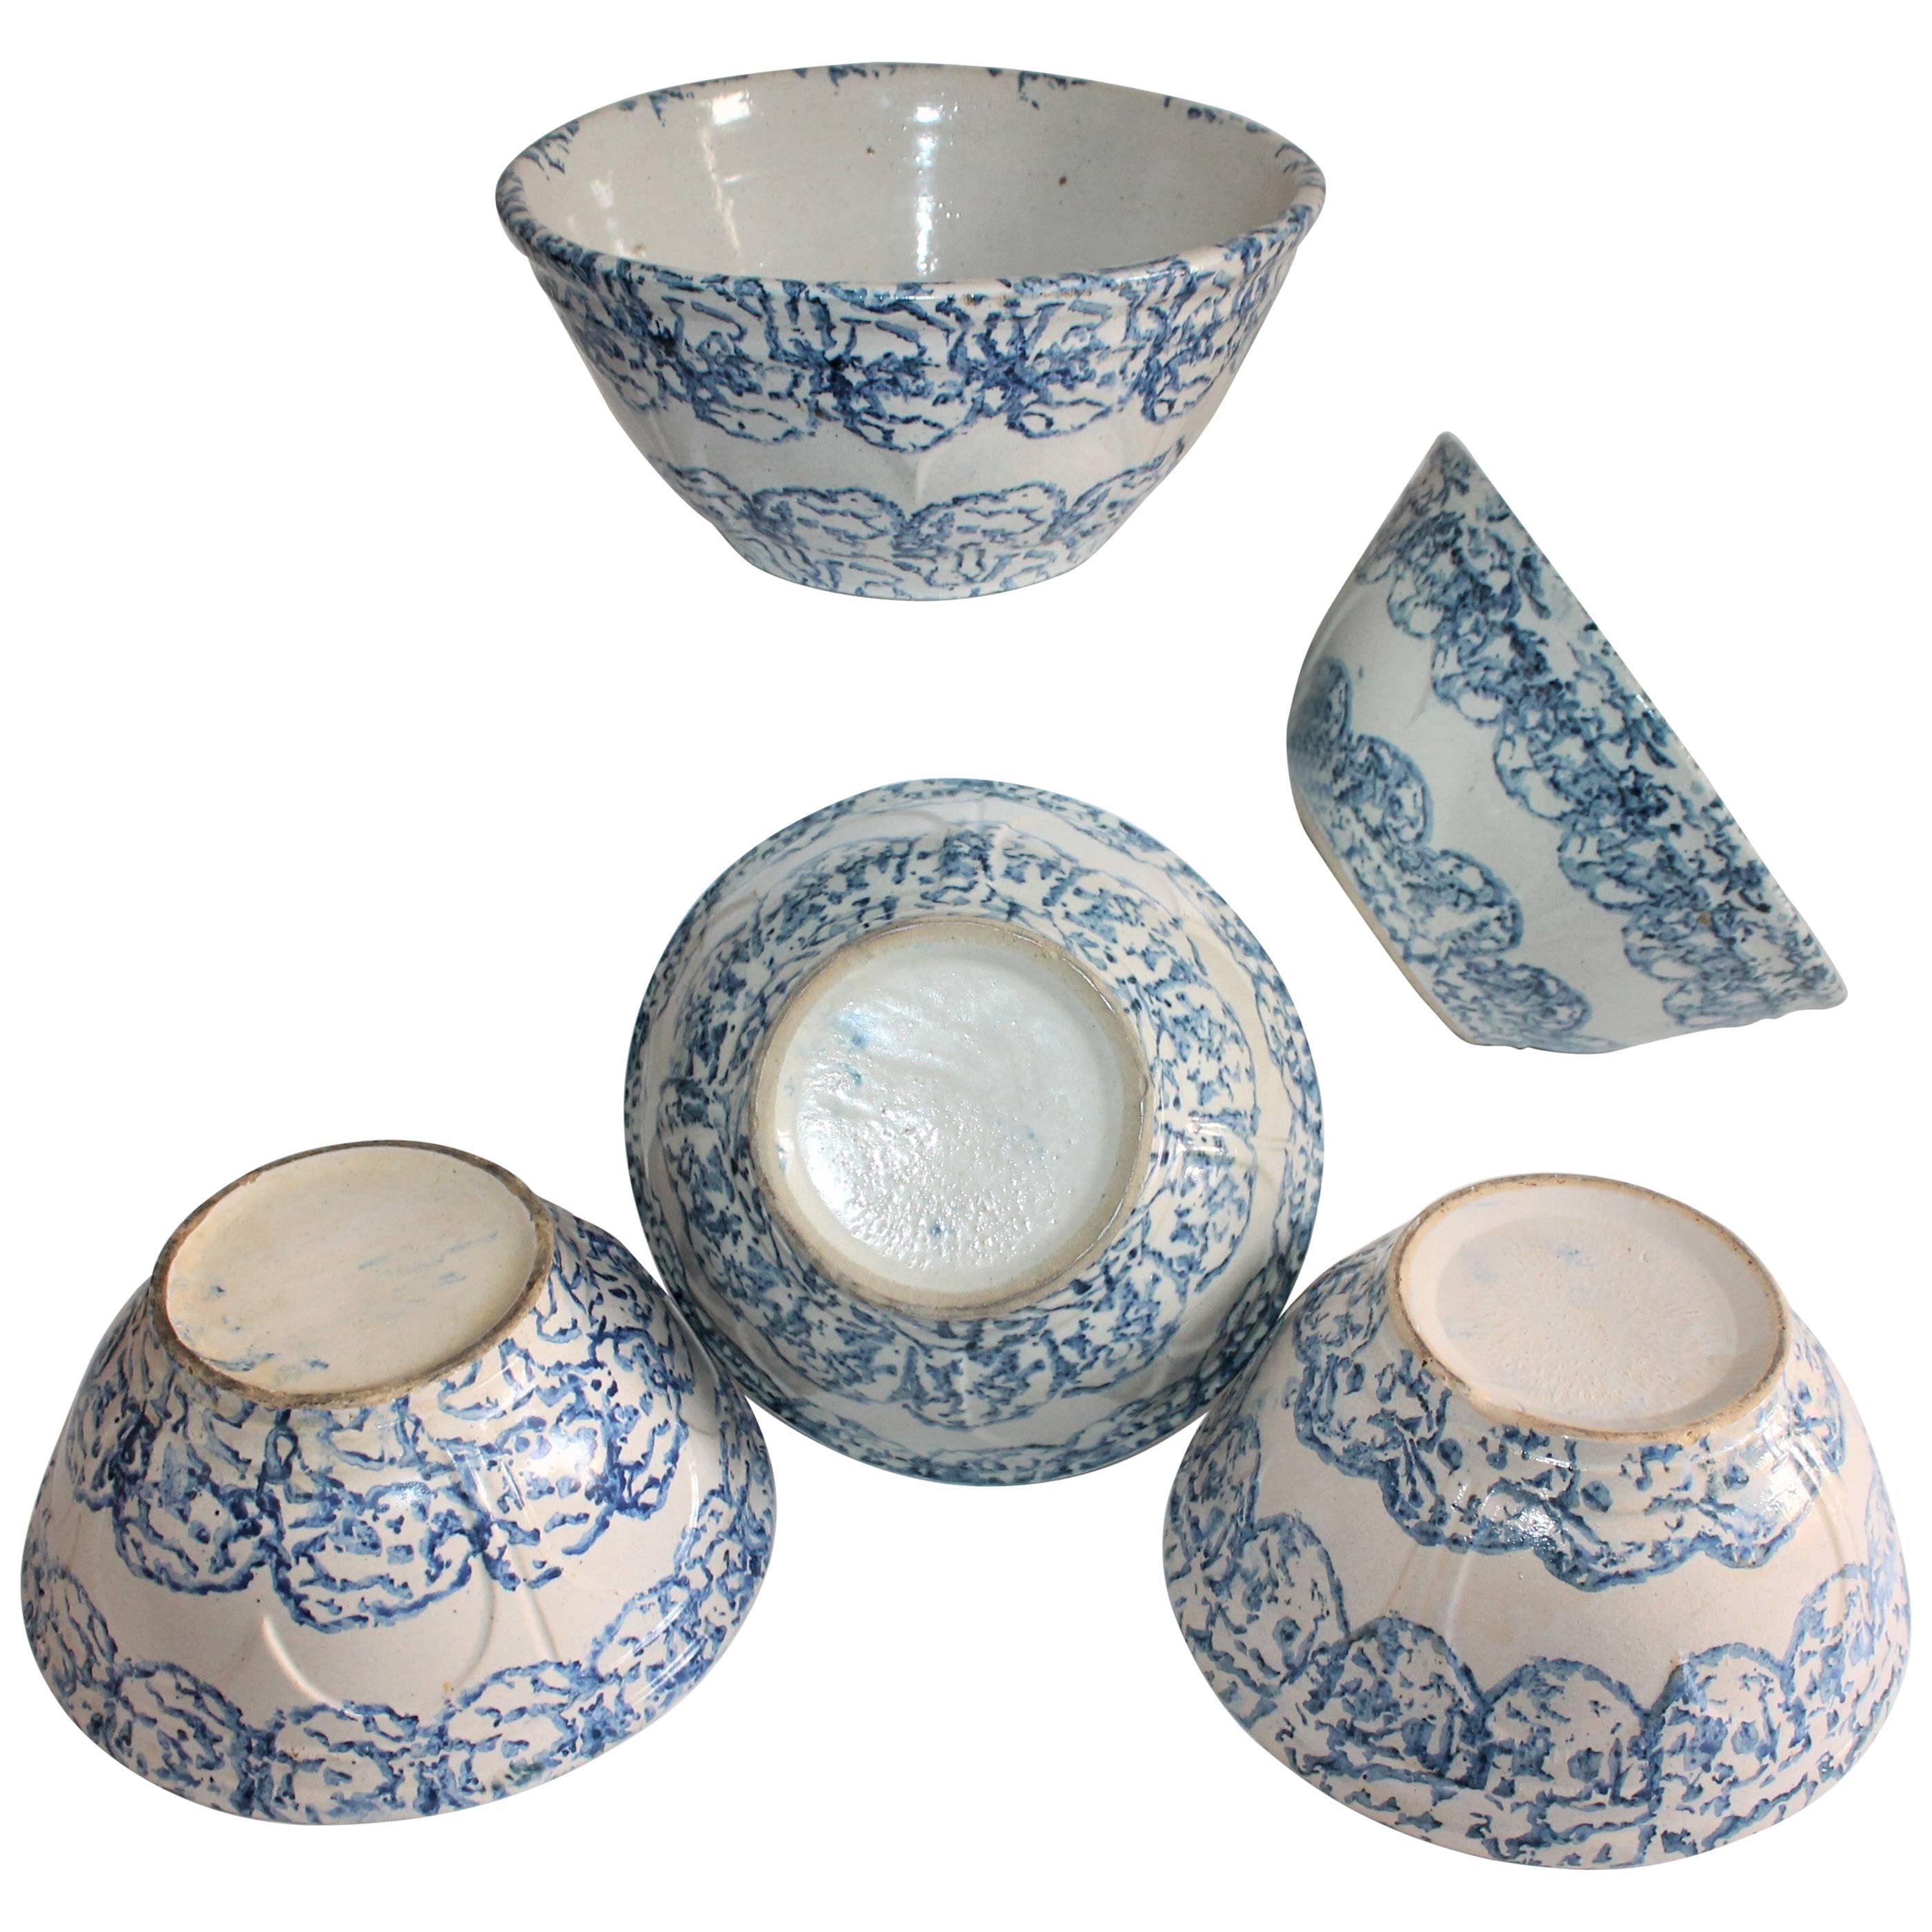 Collection de bols mixtes en poterie de Sponge Ware du 19e siècle